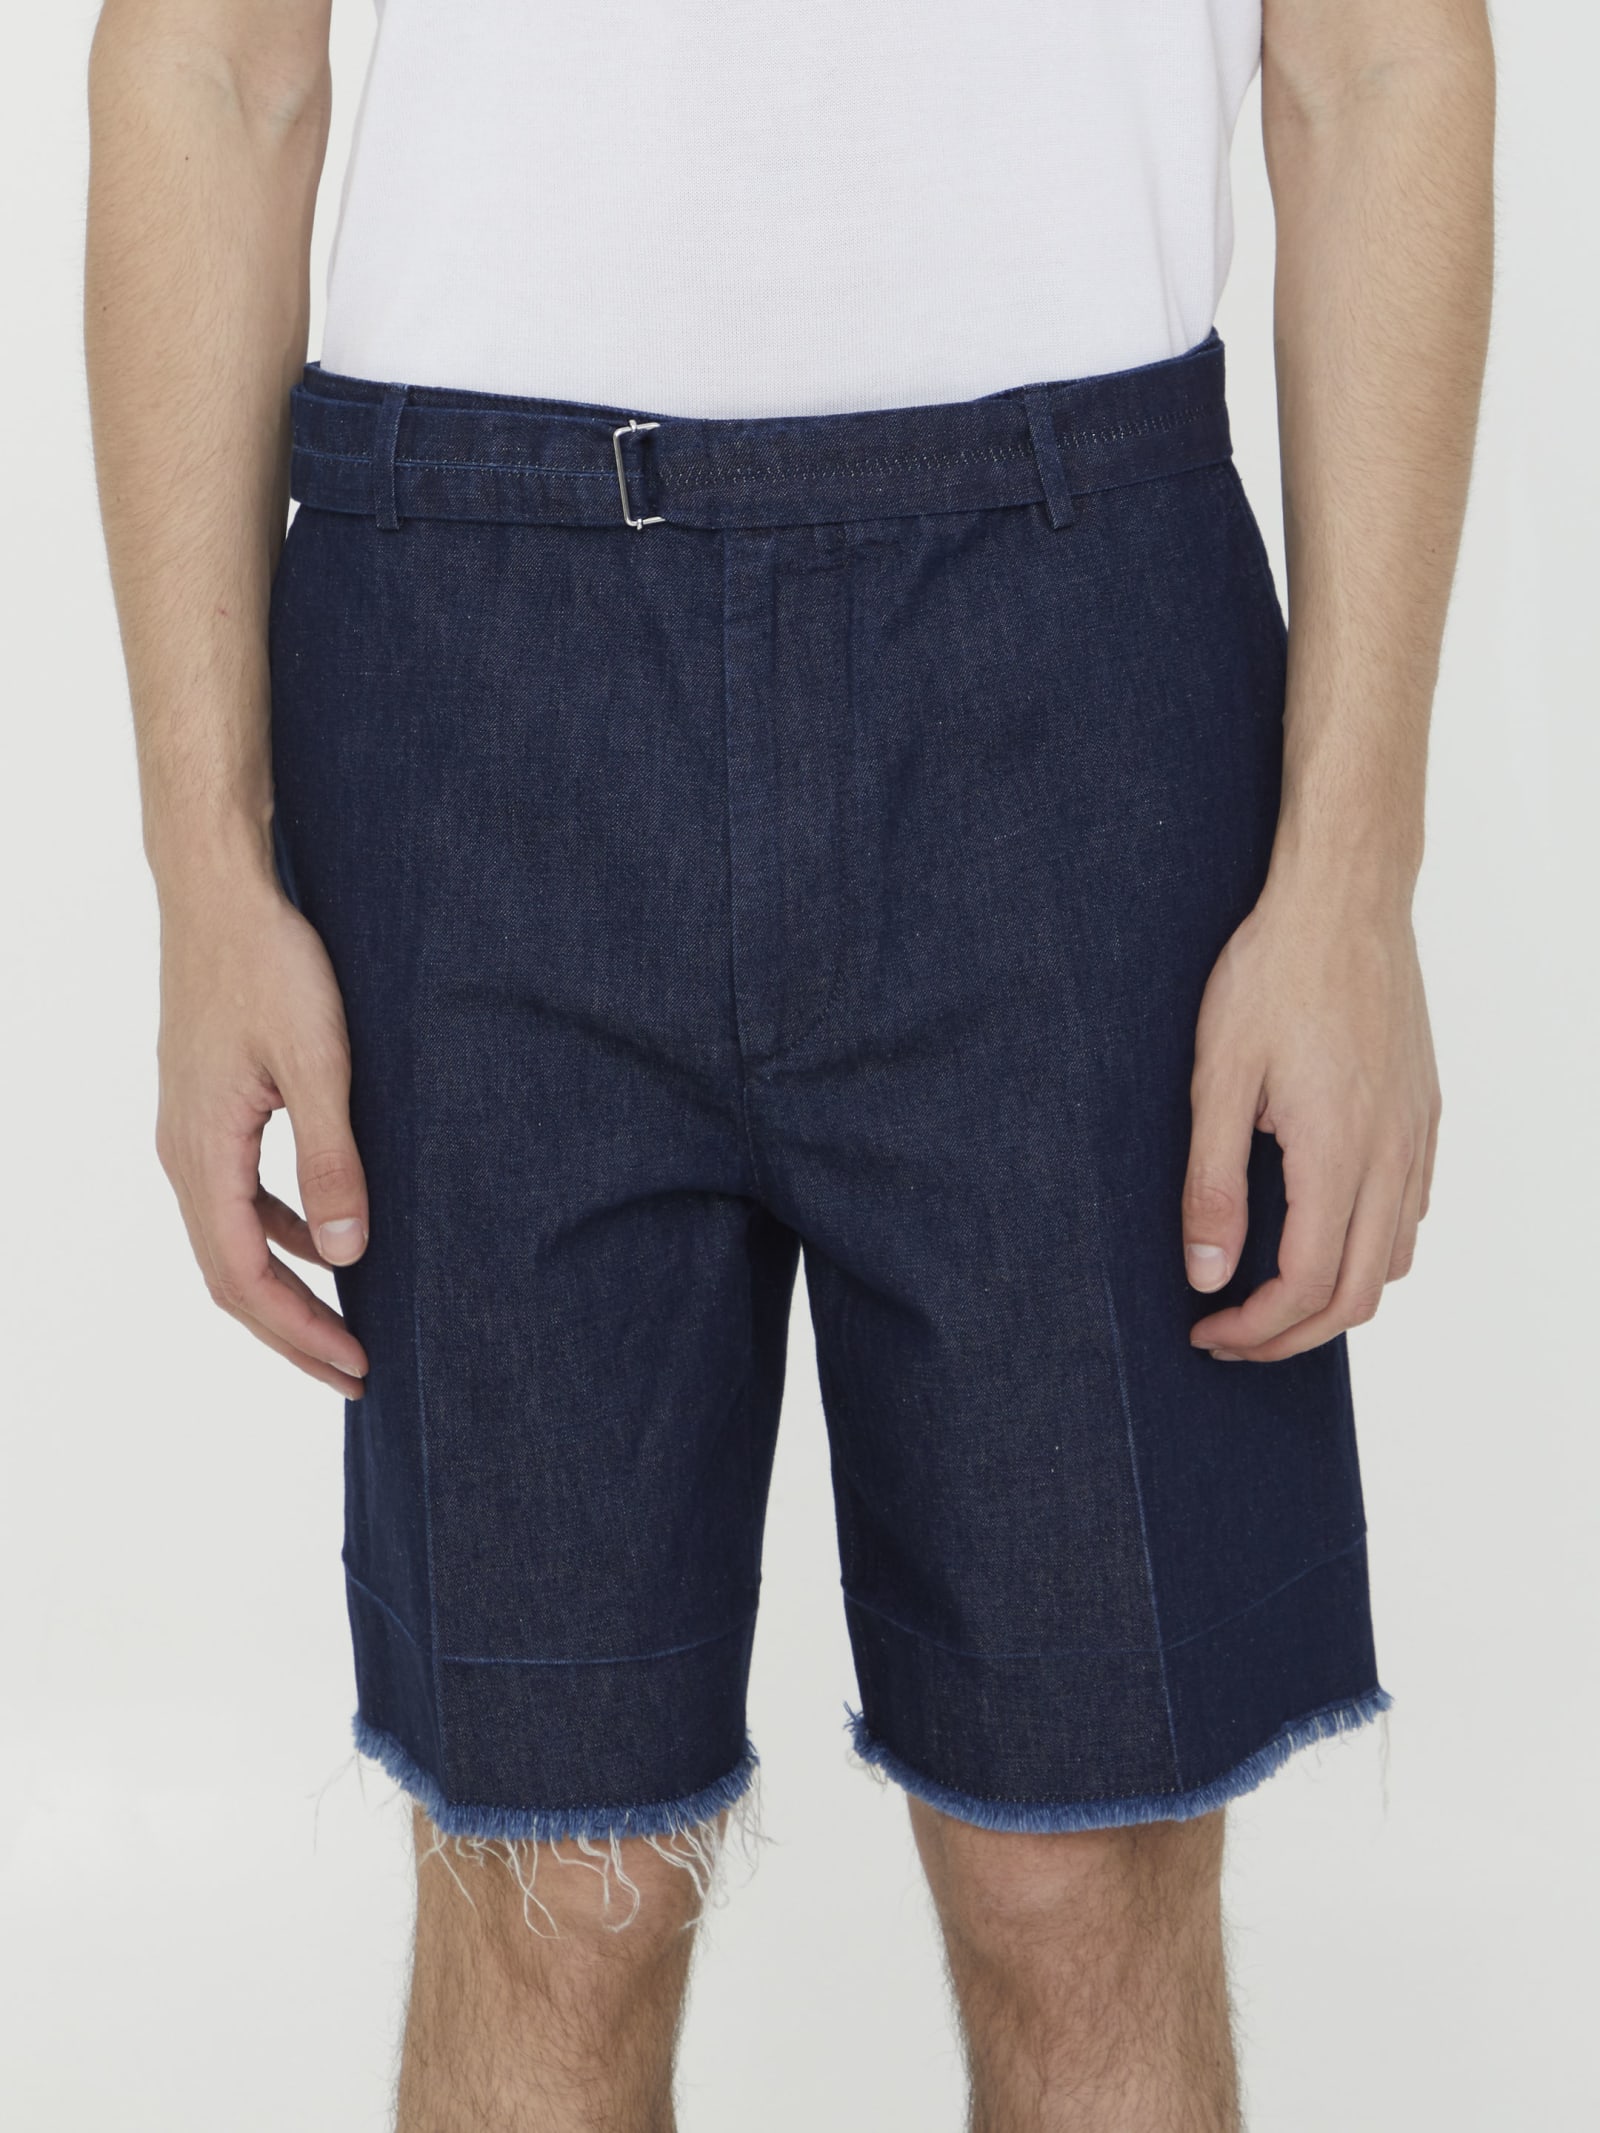 Blue Denim Bermuda Shorts